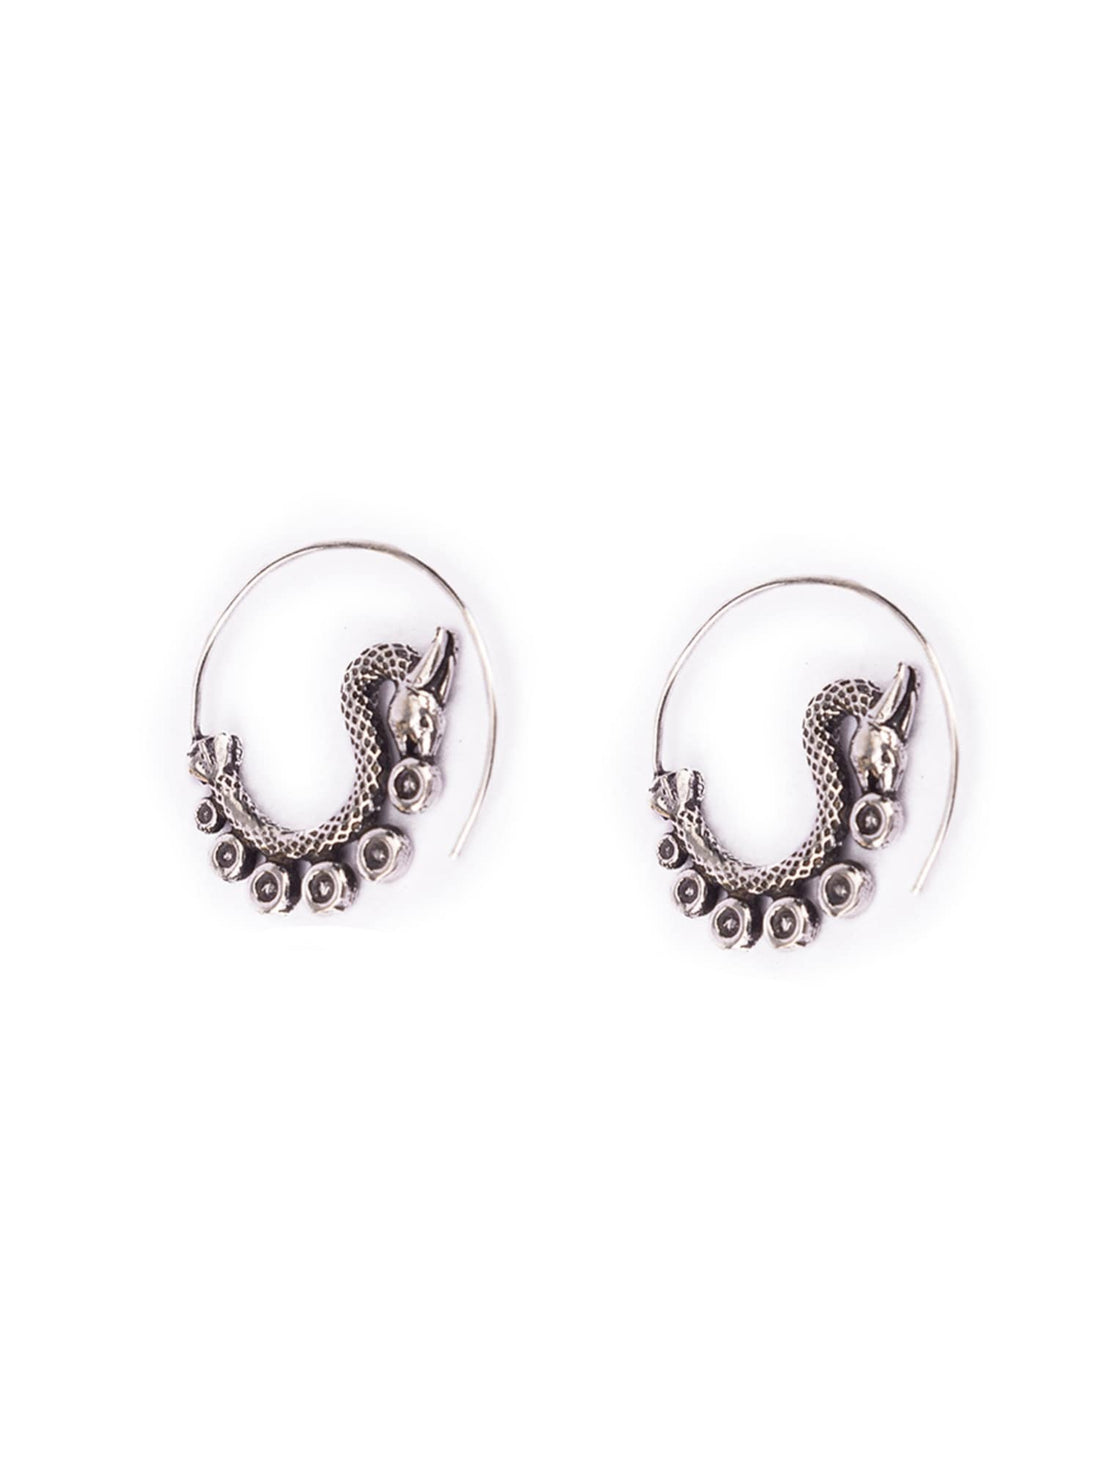 Daily Wear Hoops Earrings - Mystic Dragon Silver-Plated Brass Earrings By Studio One Love